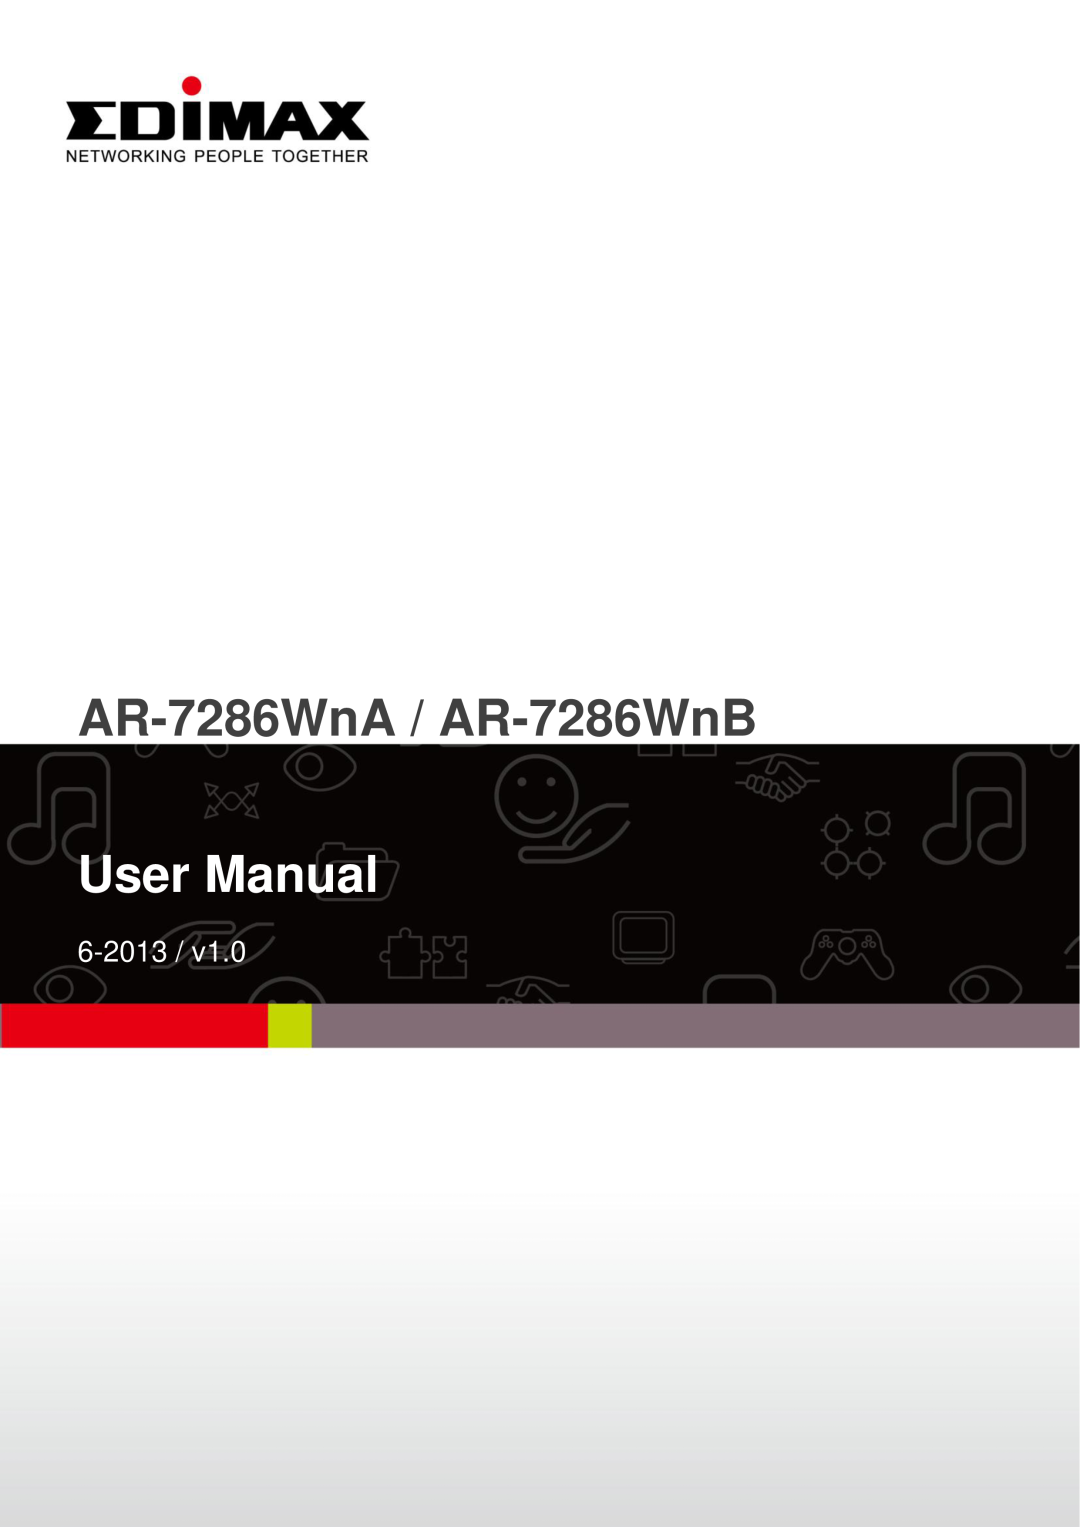 Edimax Technology AR-7286WNB user manual AR-7286WnA / AR-7286WnB, User Manual, 6-2013 